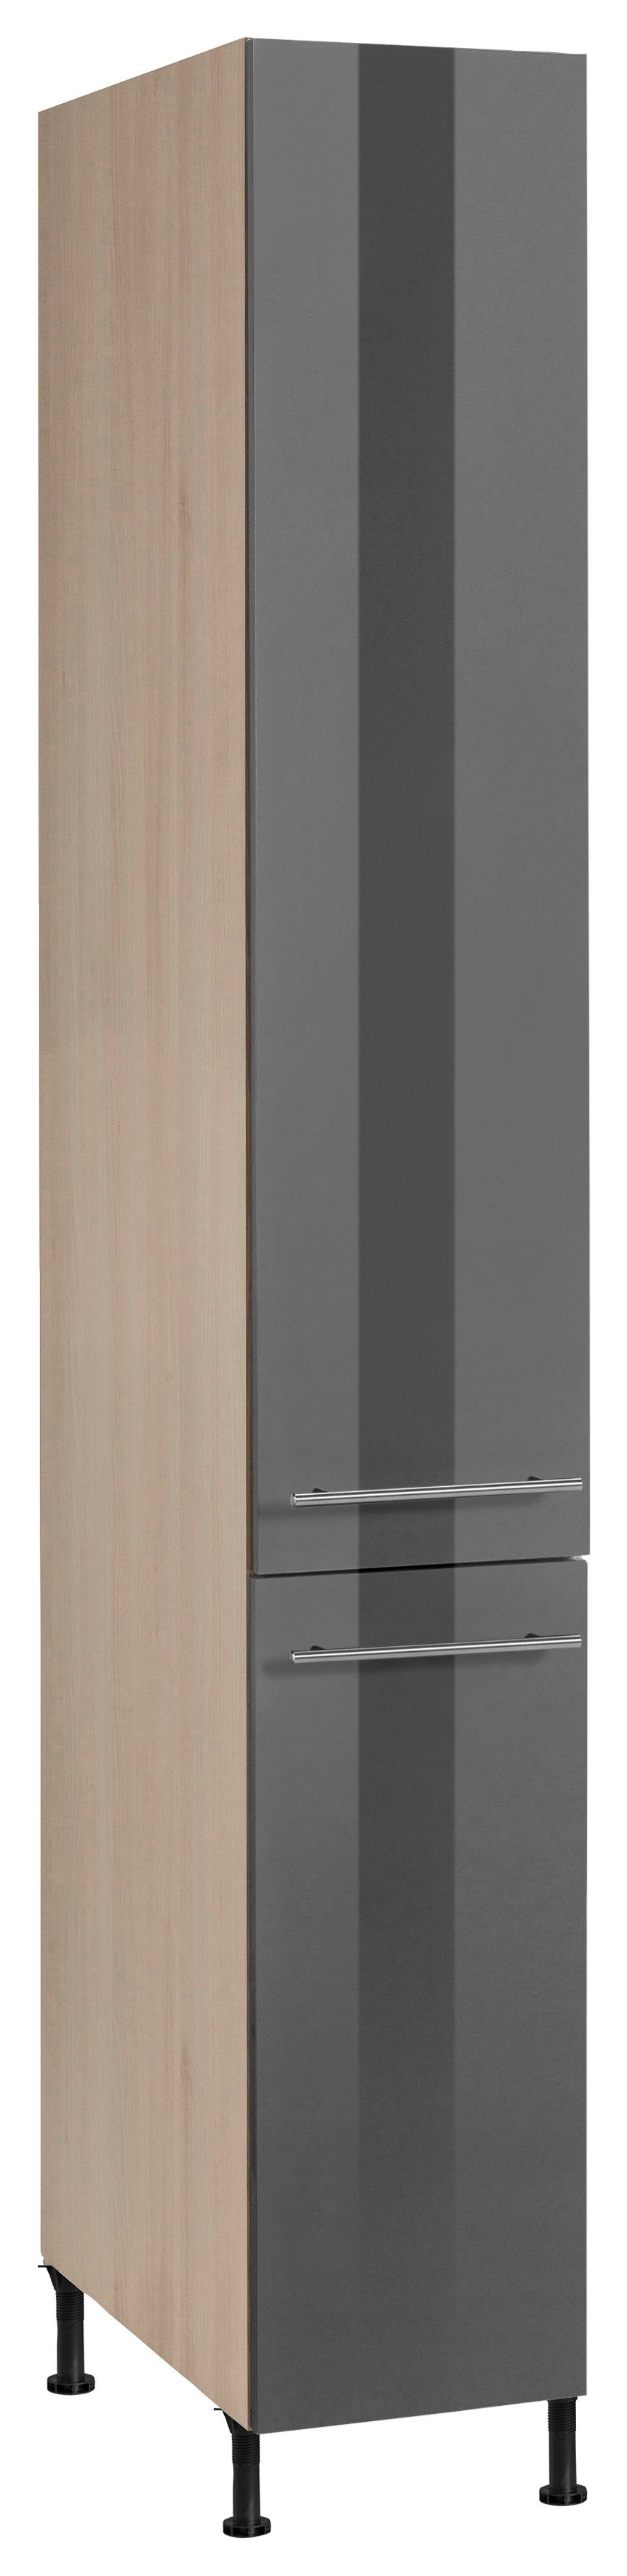 OPTIFIT Apothekerschrank Bern 30 cm breit, 212 cm hoch, mit höhenverstellbaren Stellfüßen grau Hochglanz/akaziefarben | akaziefarben